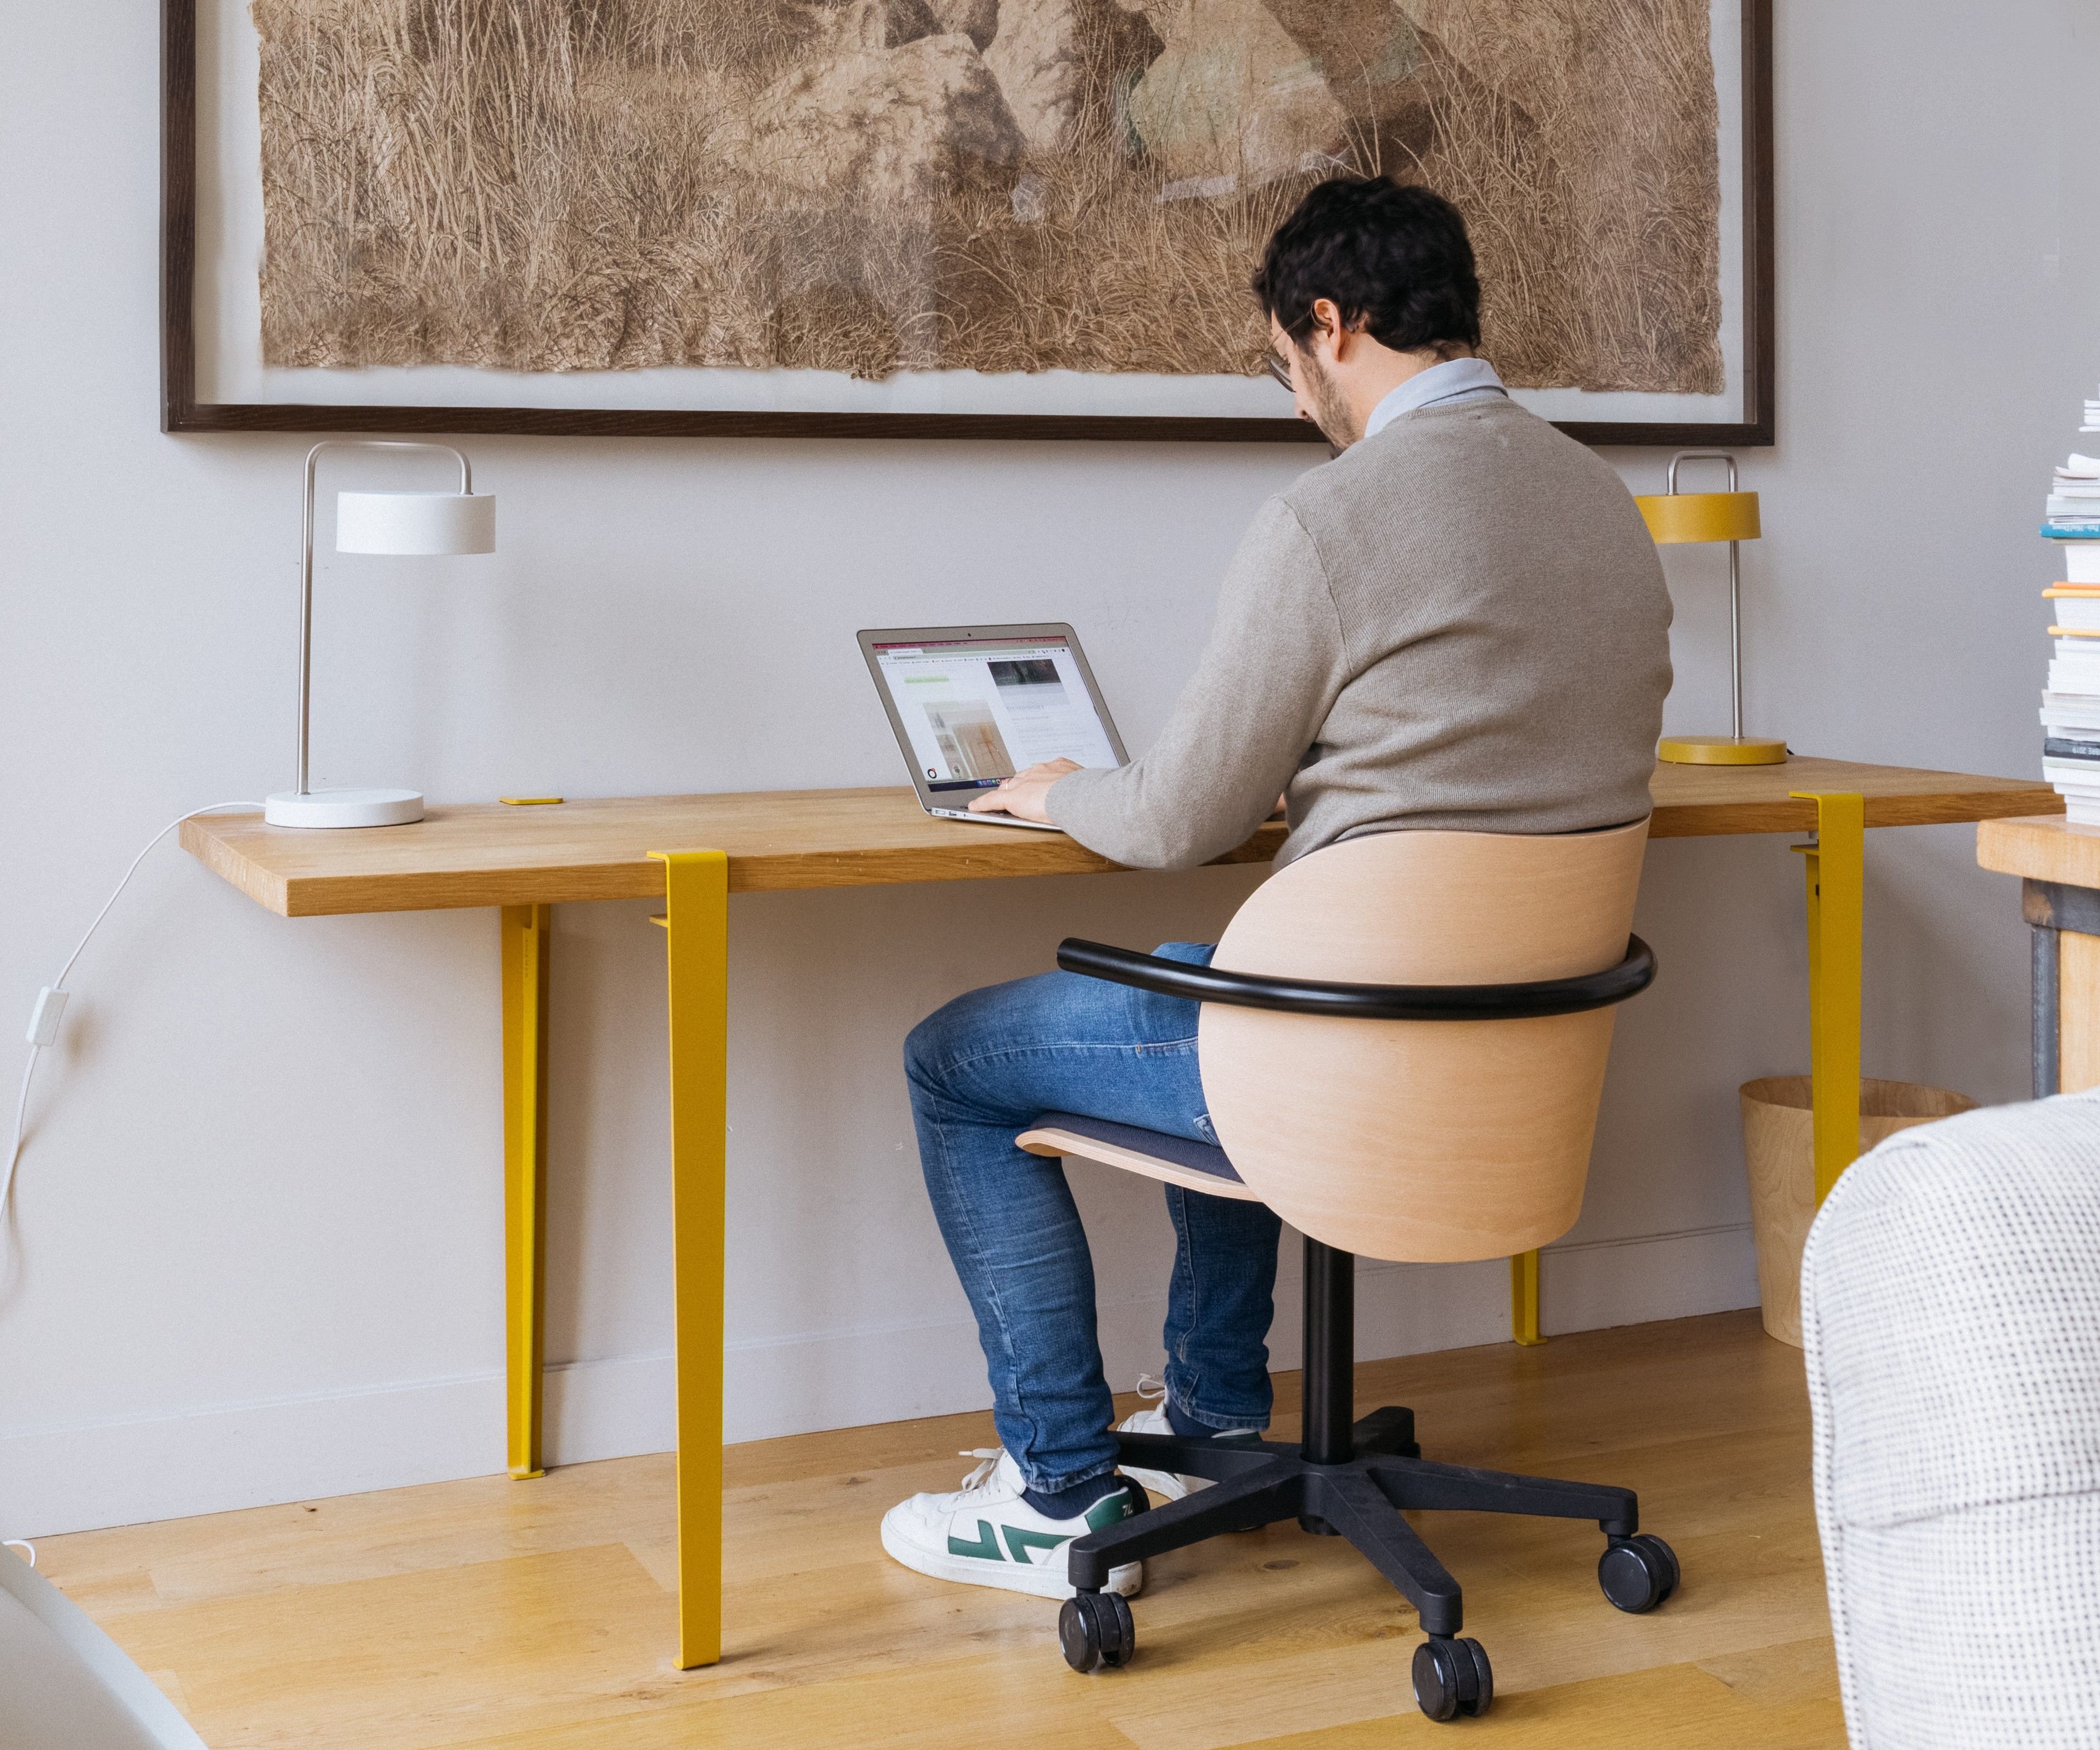 La Chaise française a lancé un nouveau modèle, à la fois ergonomique et esthétique, pour s'asseoir à son bureau. DR